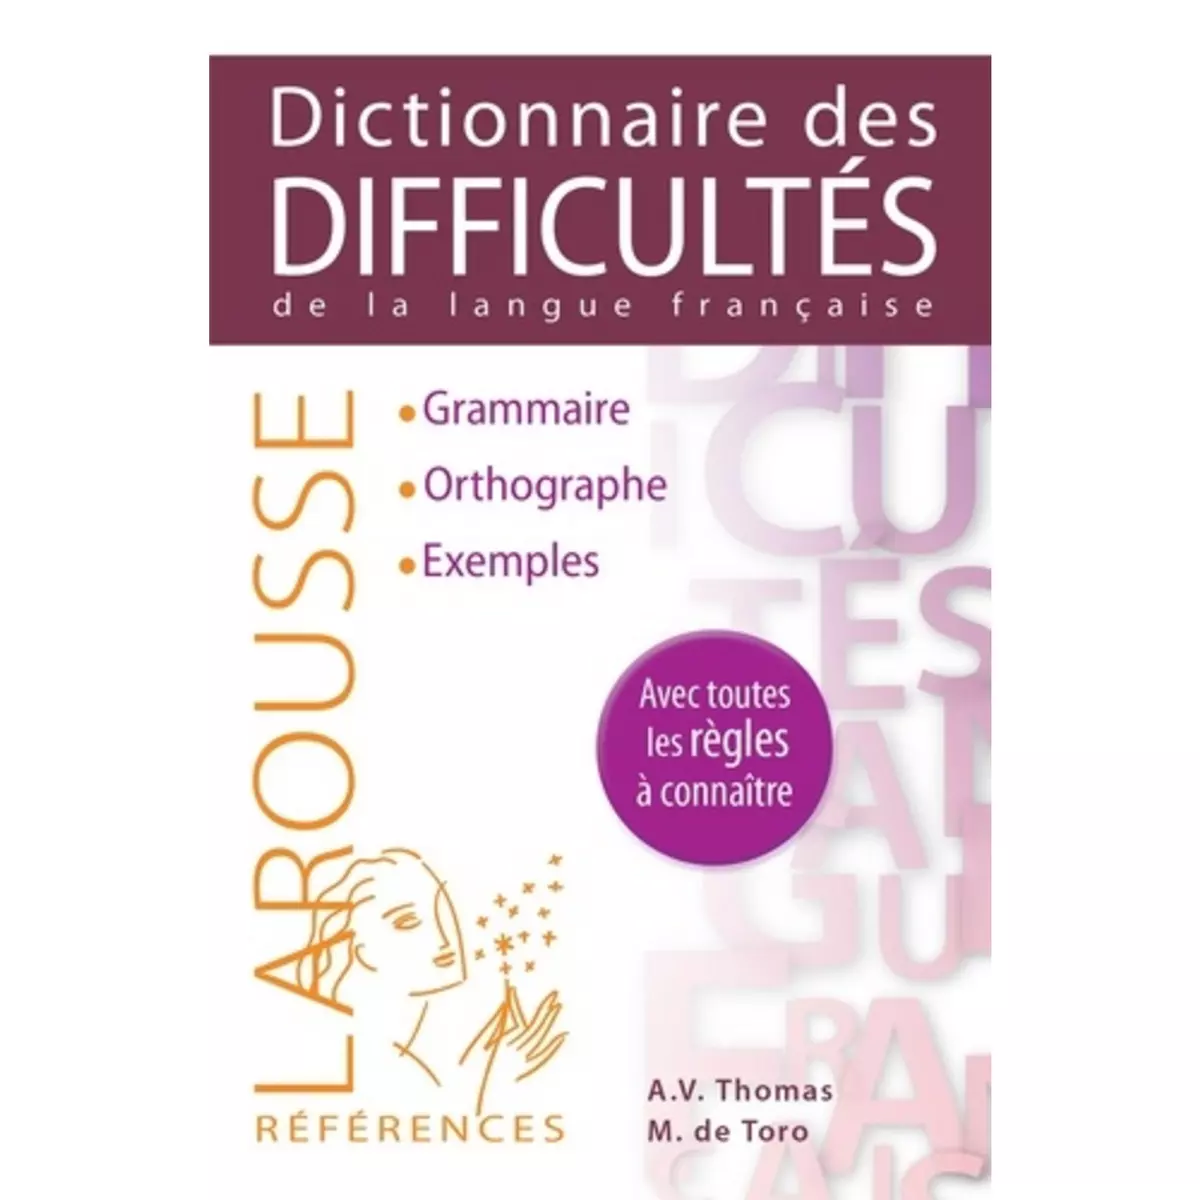  DICTIONNAIRE DES DIFFICULTES DE LA LANGUE FRANCAISE, Thomas Adolphe